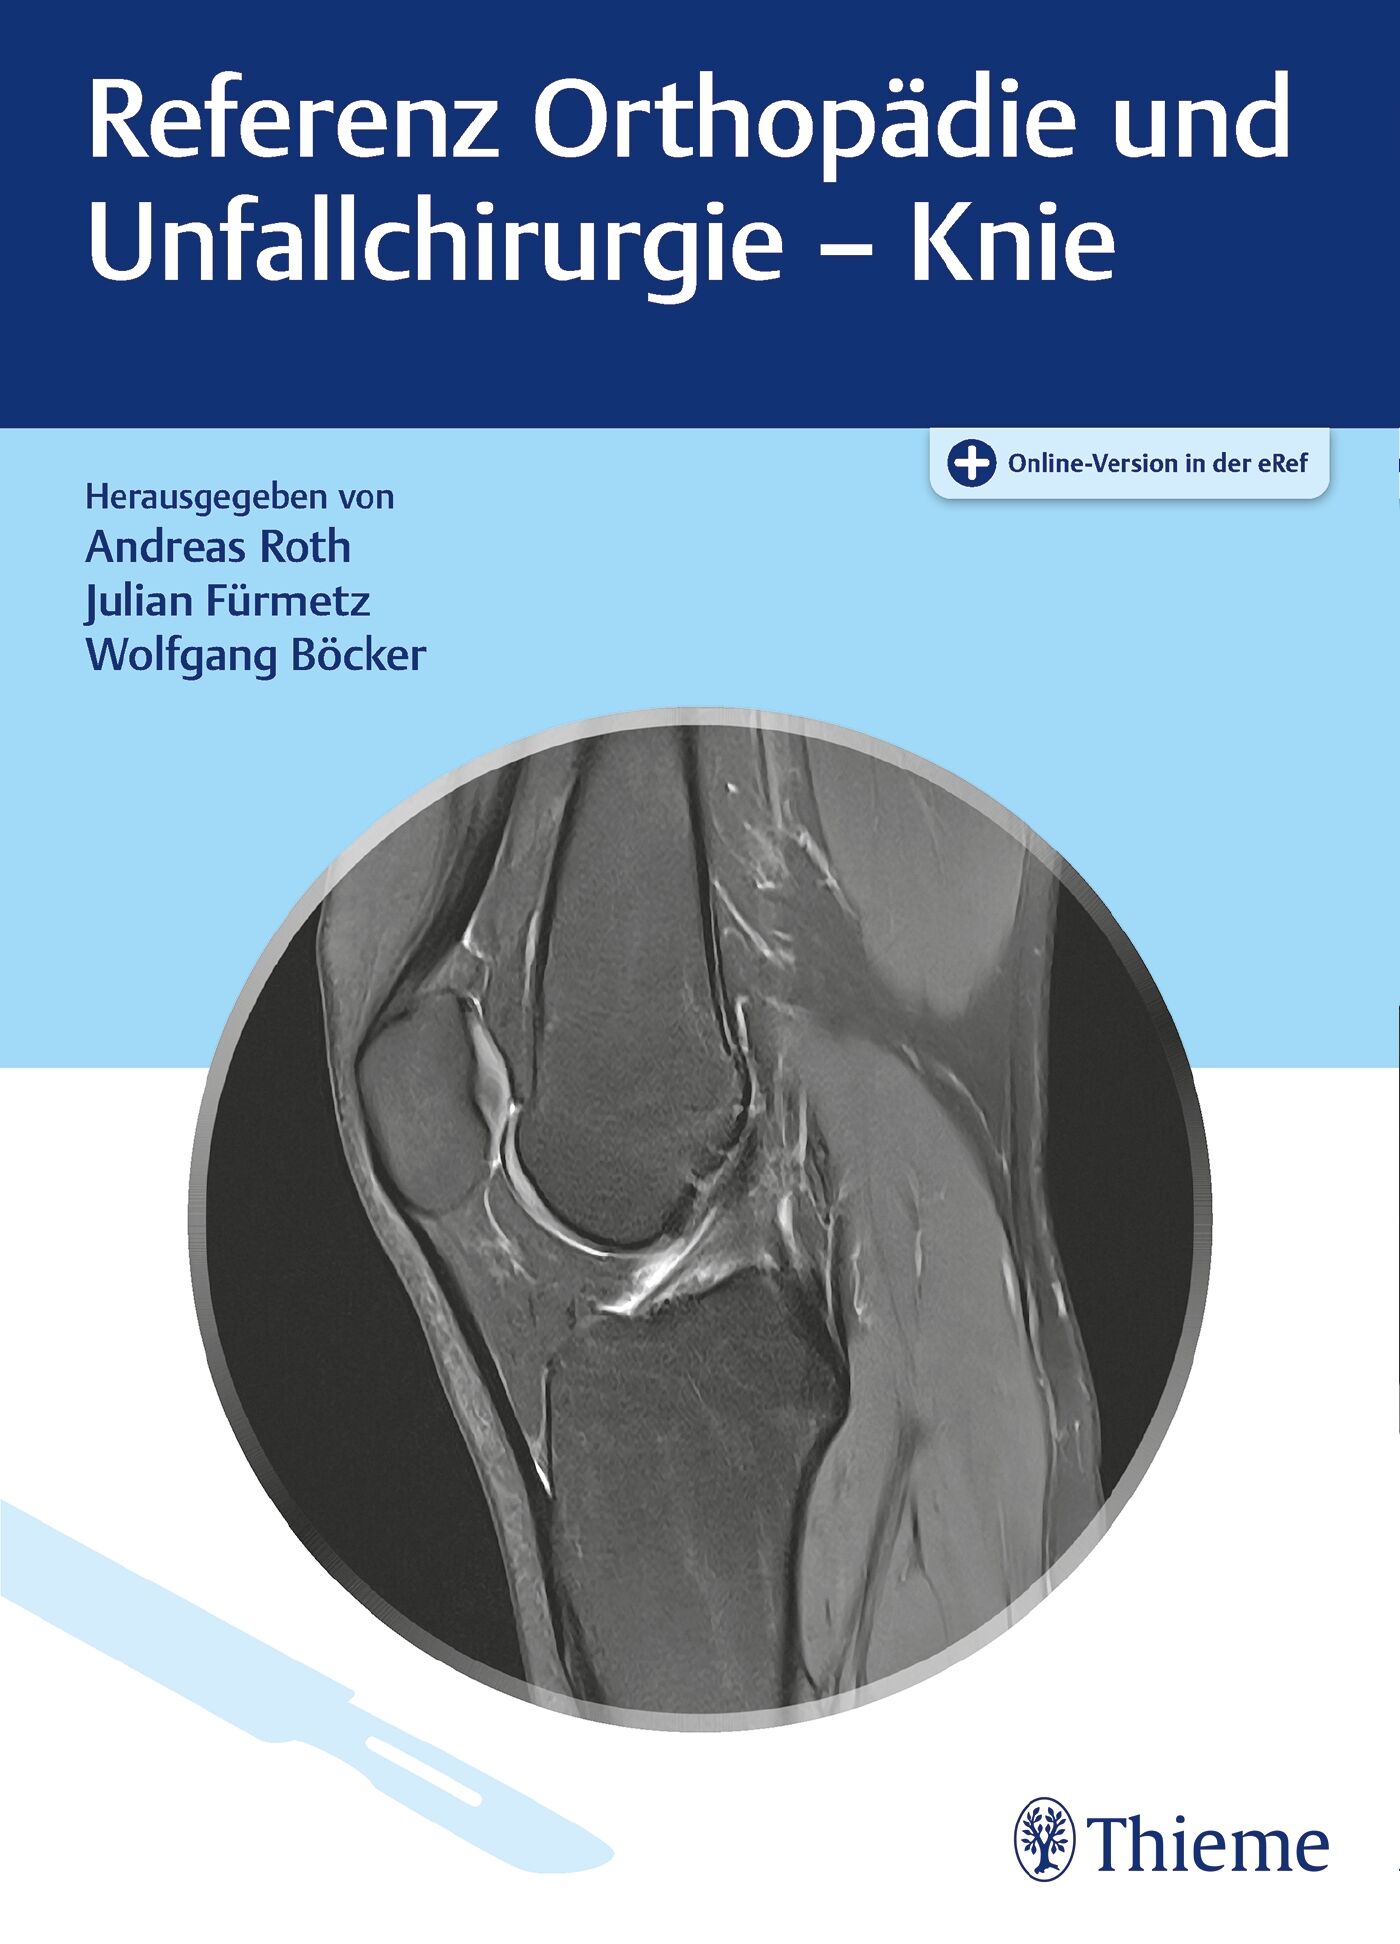 Referenz Orthopädie und Unfallchirurgie: Knie, 9783132435384